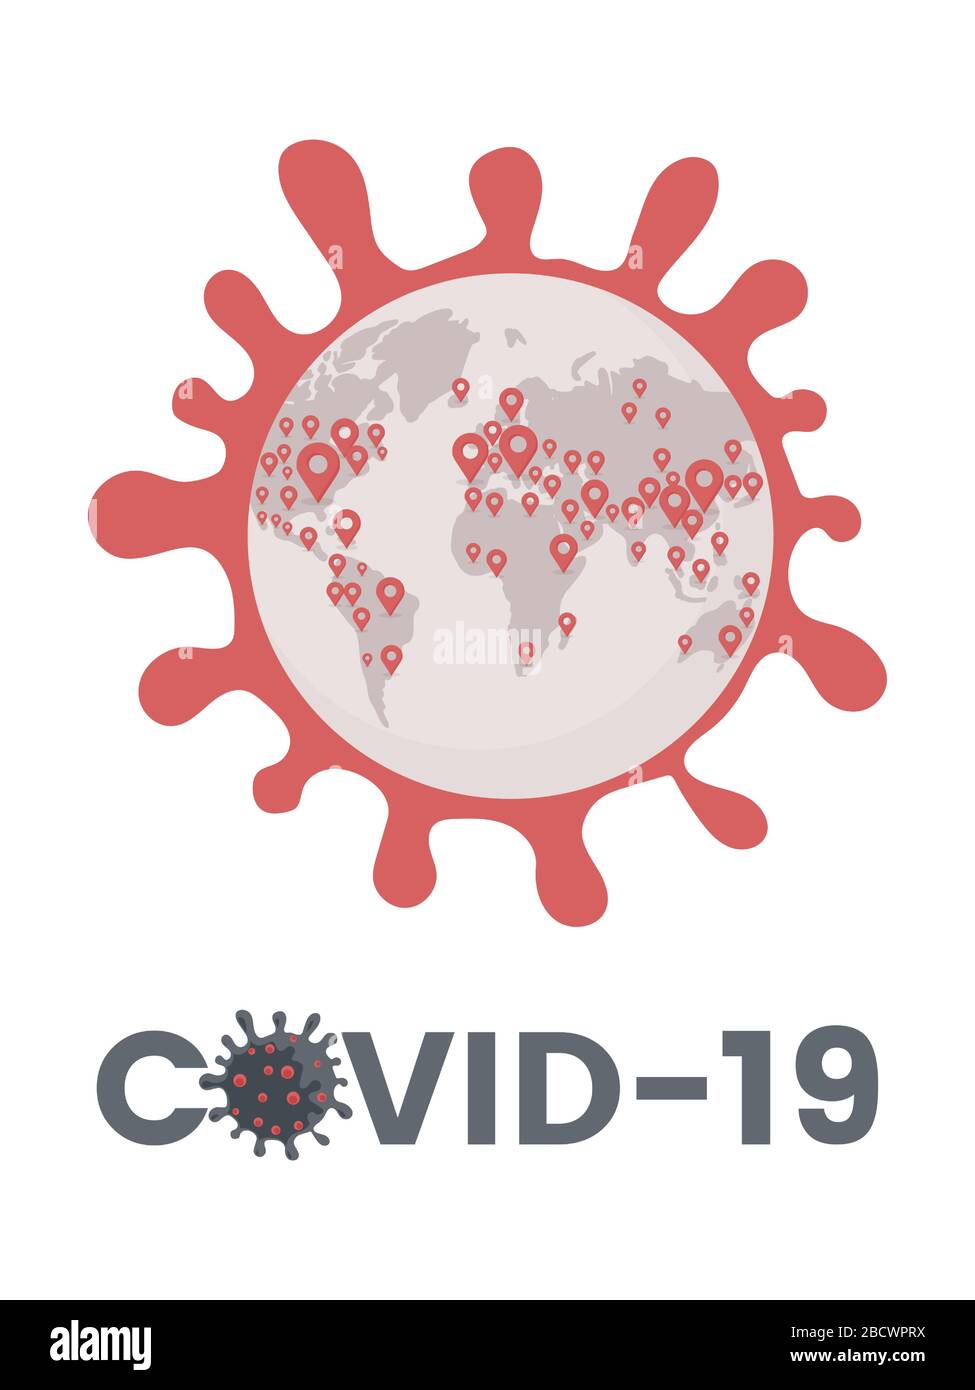 Epidemia di Covid-19 diffusa in tutto il mondo flat illustrazione. Cellula pericolosa di coronavirus, pandemia globale di influenza respiratoria patogena, concetto vettoriale con tipografia. Illustrazione Vettoriale